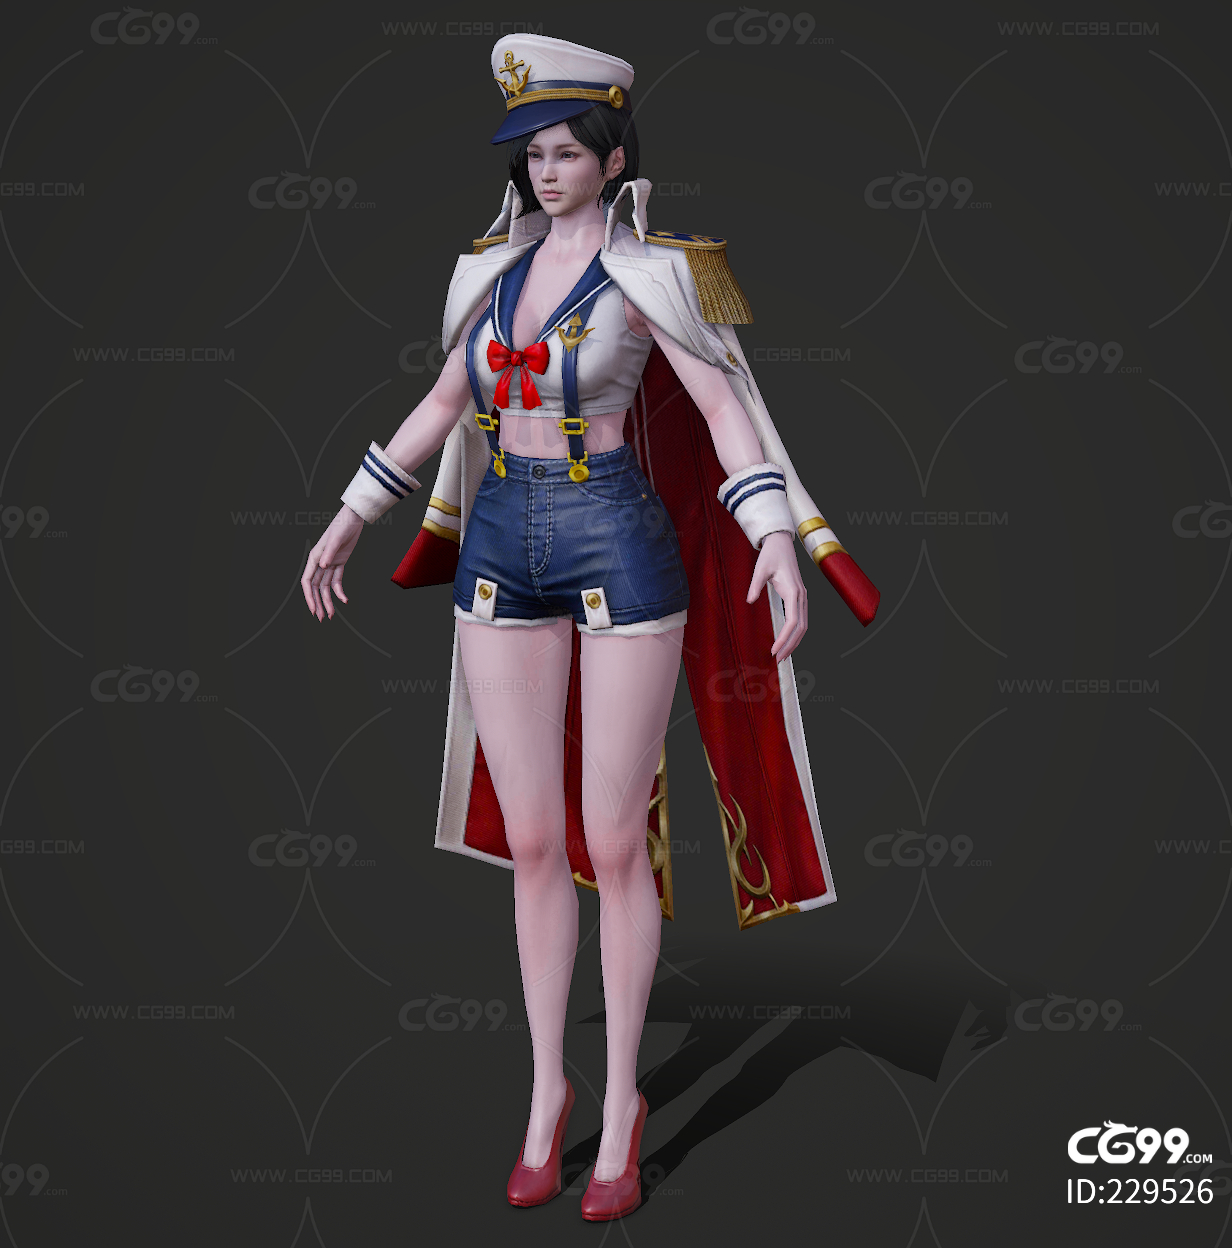 船长 水军 女海贼 女海盗 海盗船长 加勒比海盗 女将军 女军官 海军-cg模型免费下载-CG99